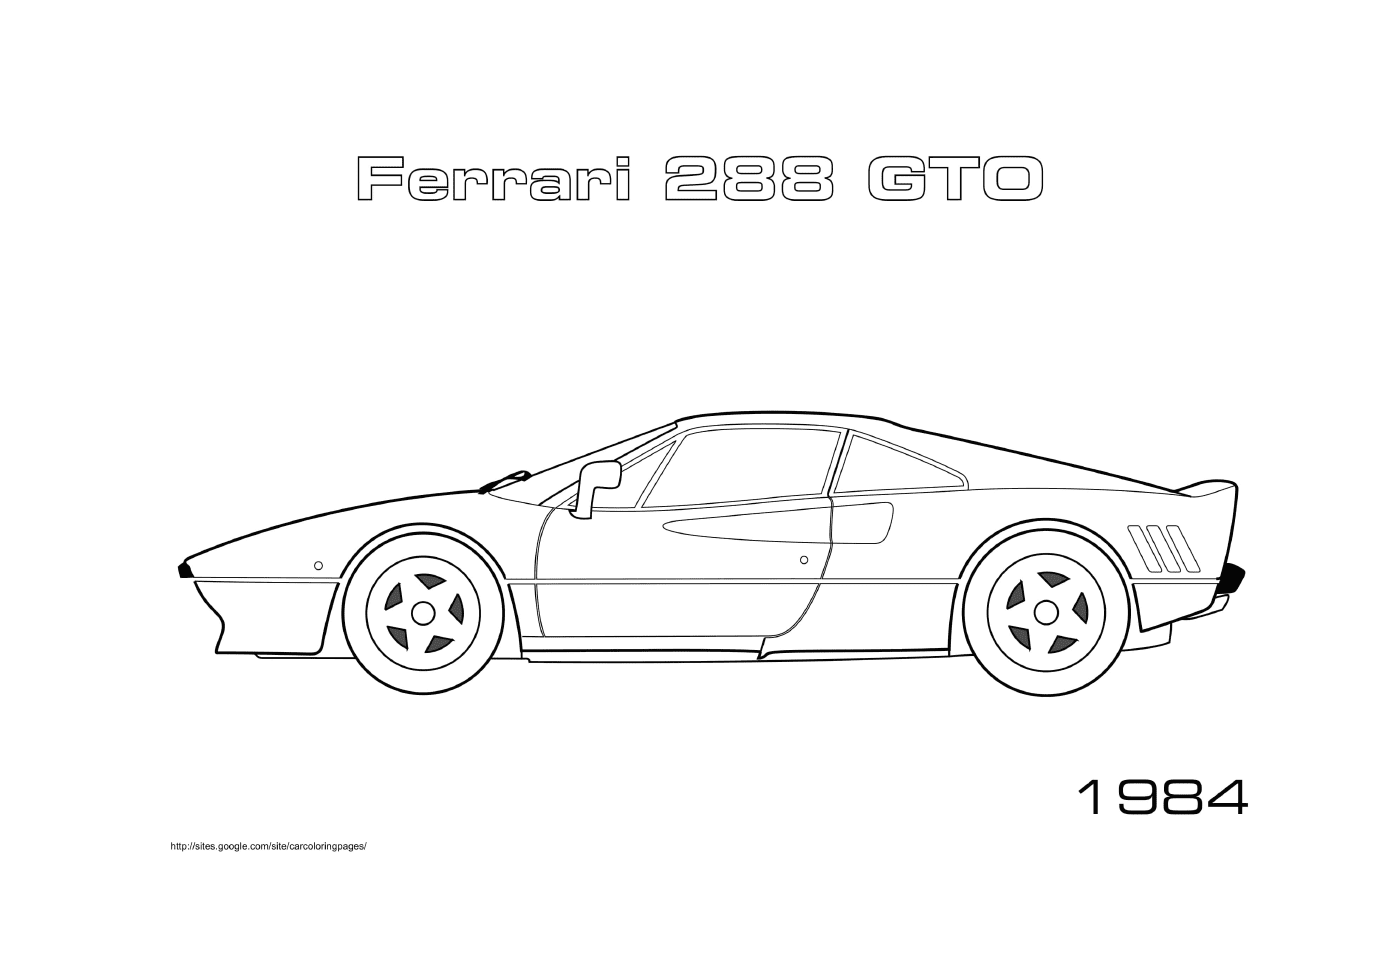  फेररी 2888 GTO, खेल कार 